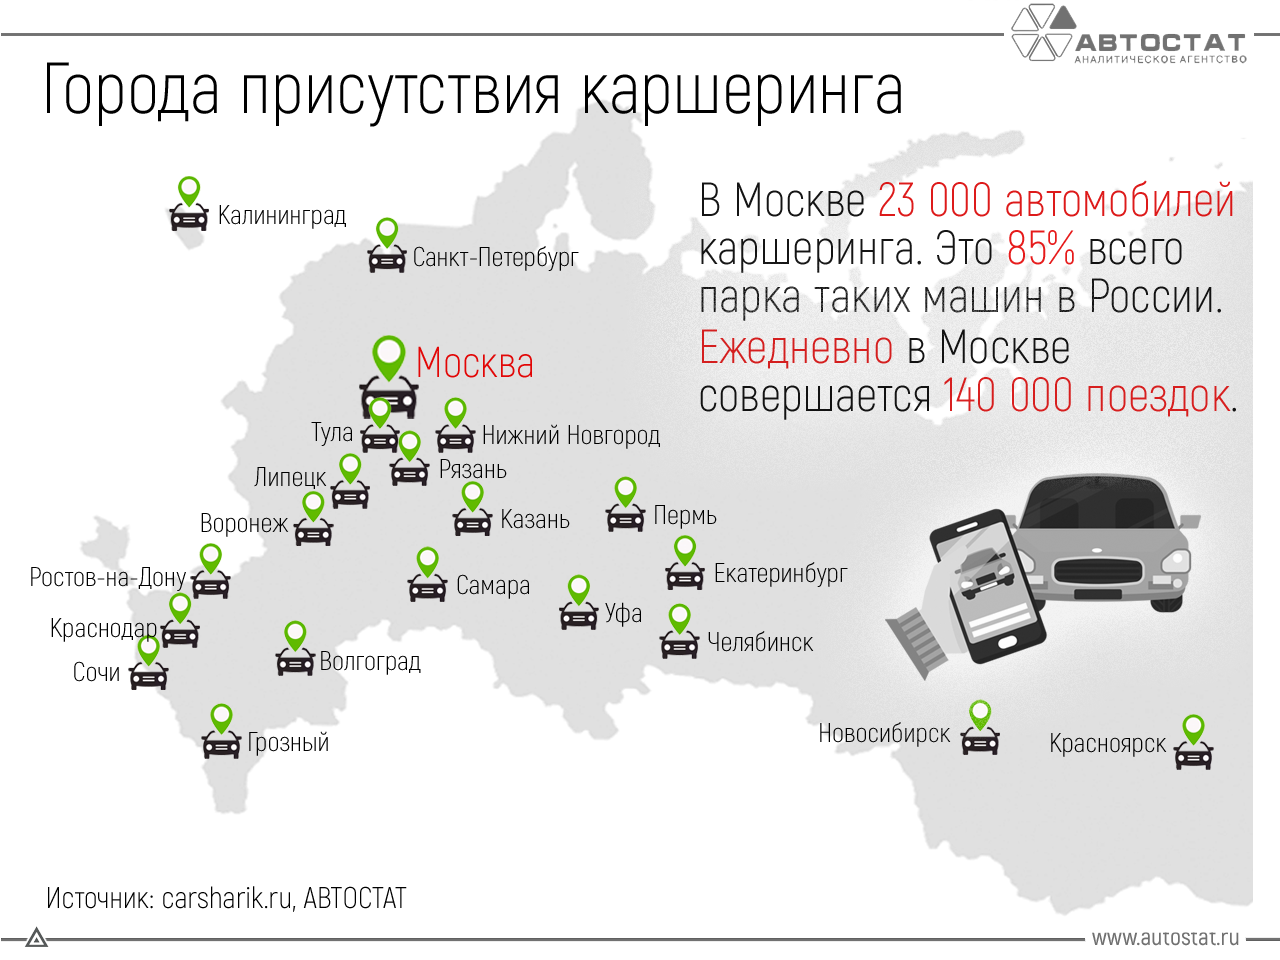 Сколько машин сегодня. Рынок каршеринга в России. Авто статистика. Фирмы каршеринга в России. Количество машин.